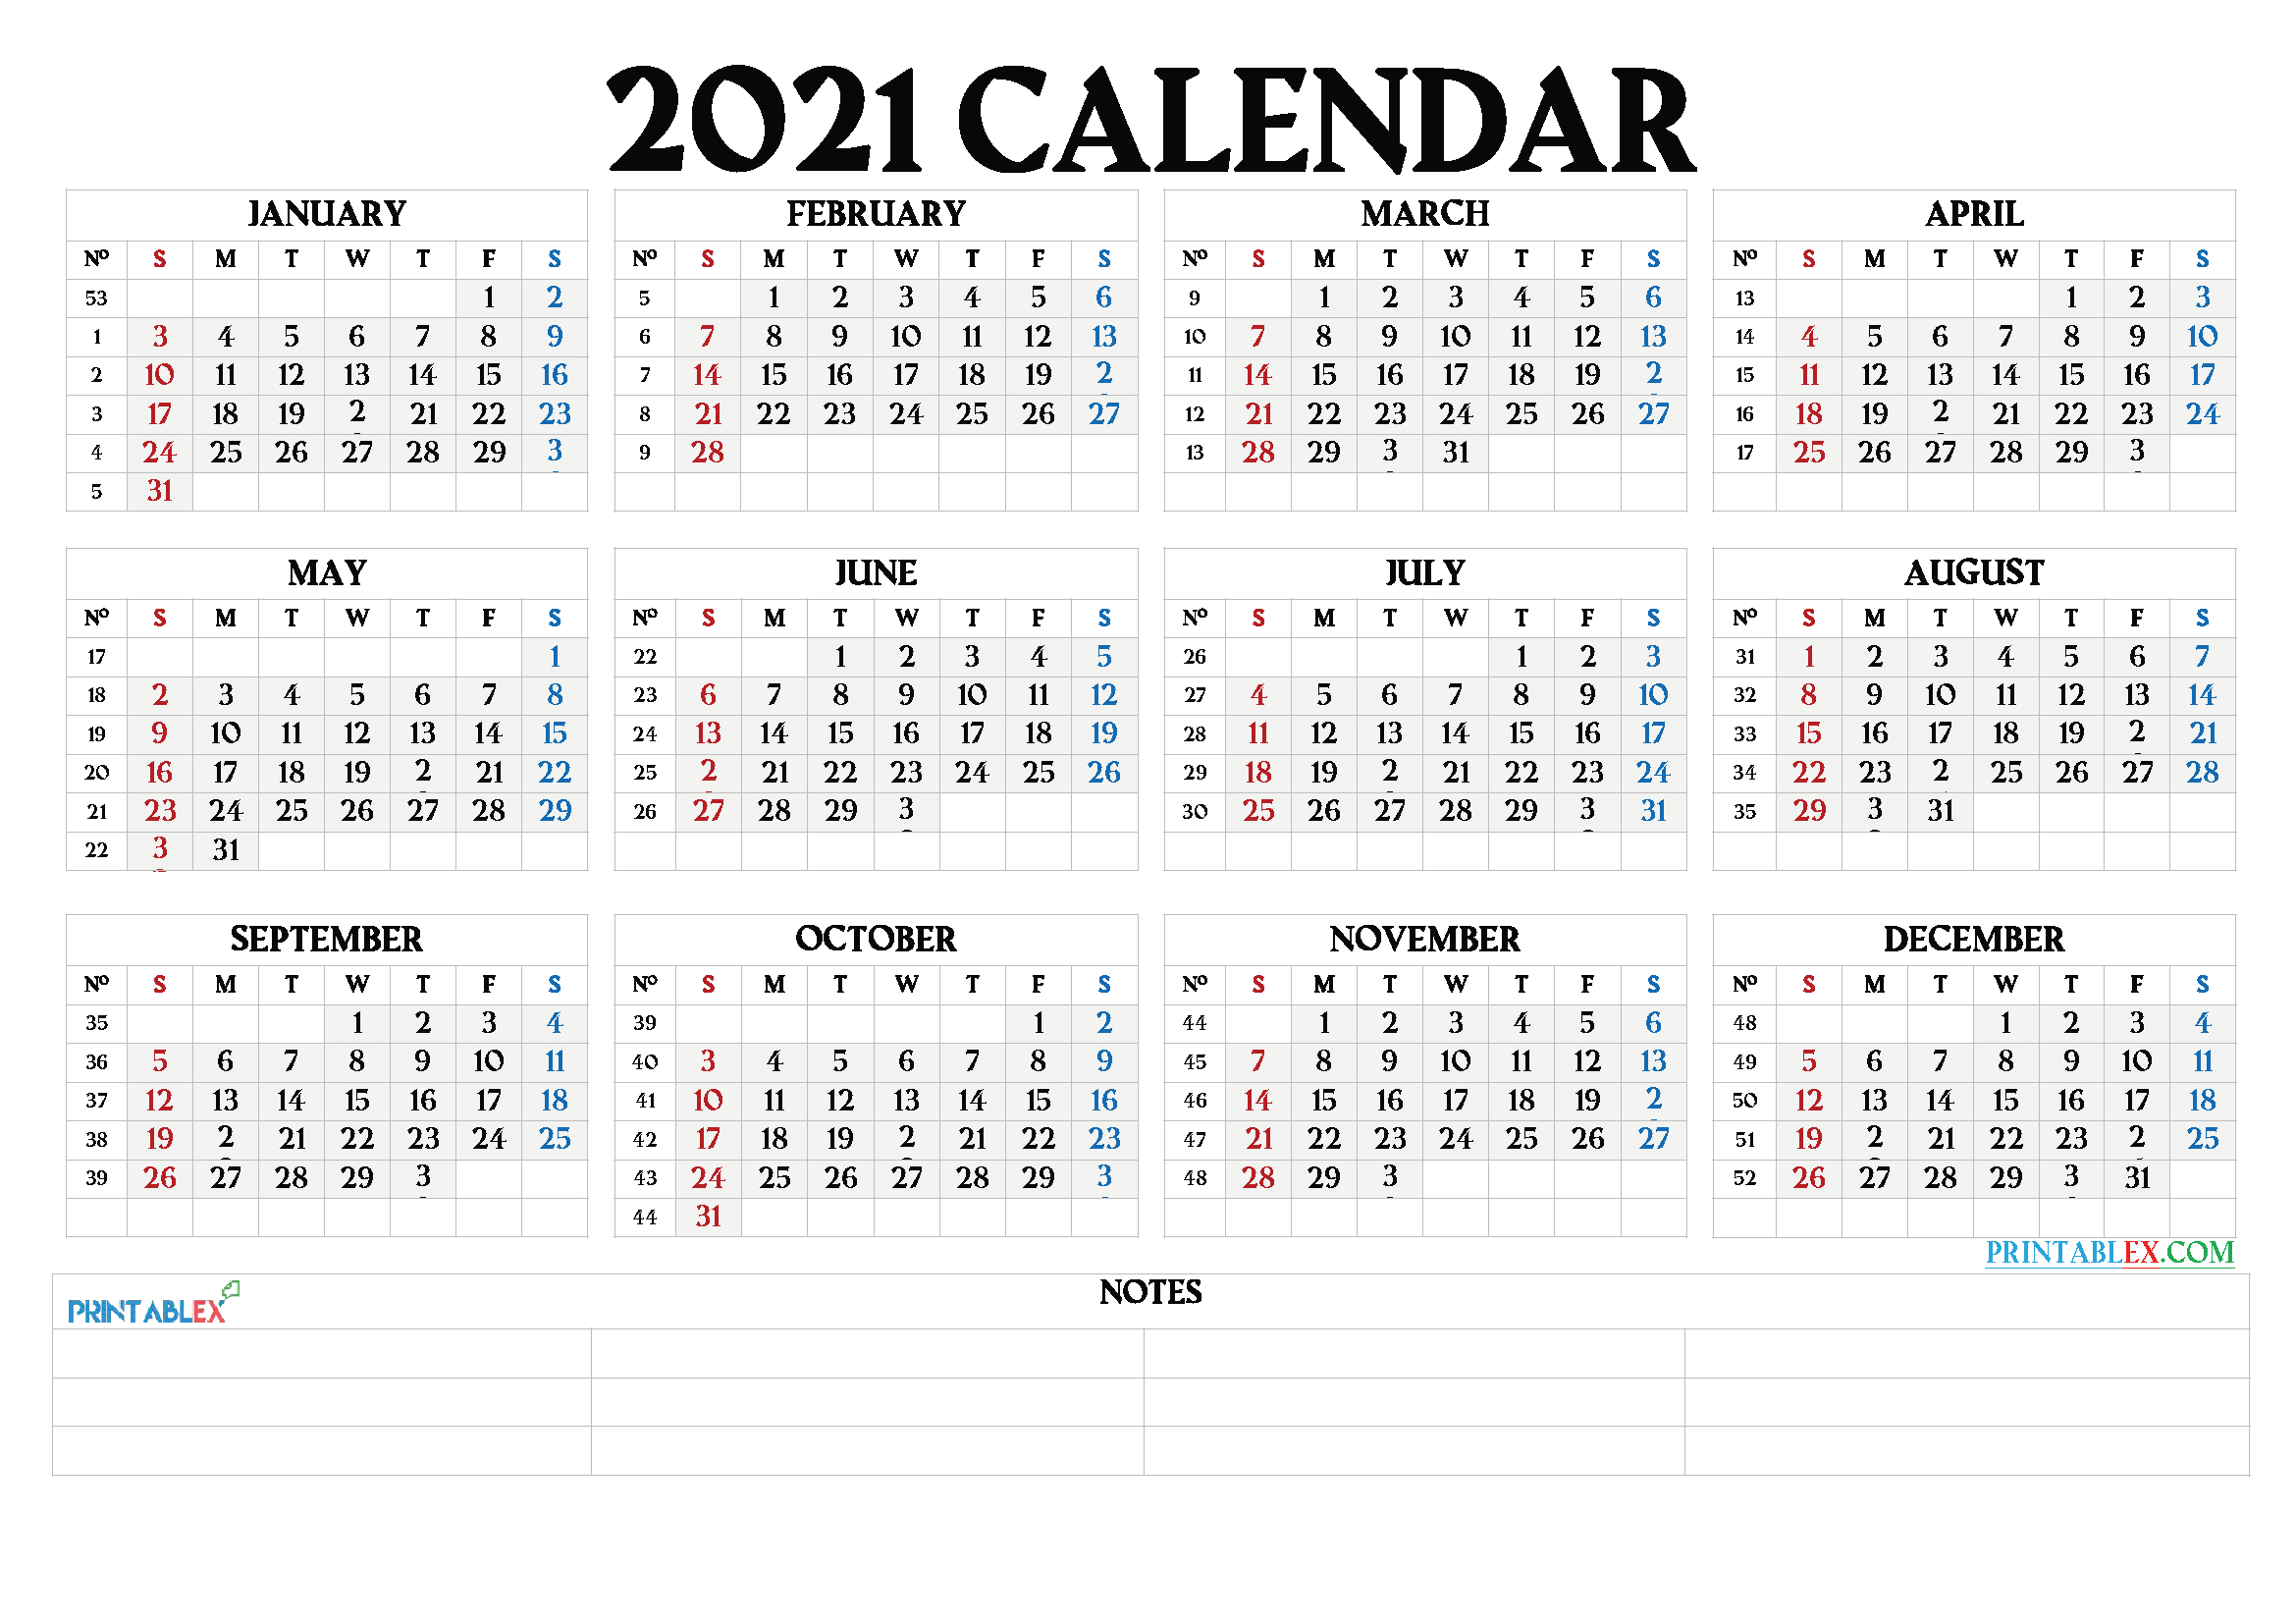 Printable 2021 Calendar By Month - 21Ytw66-Free Monthly Calendar 2021